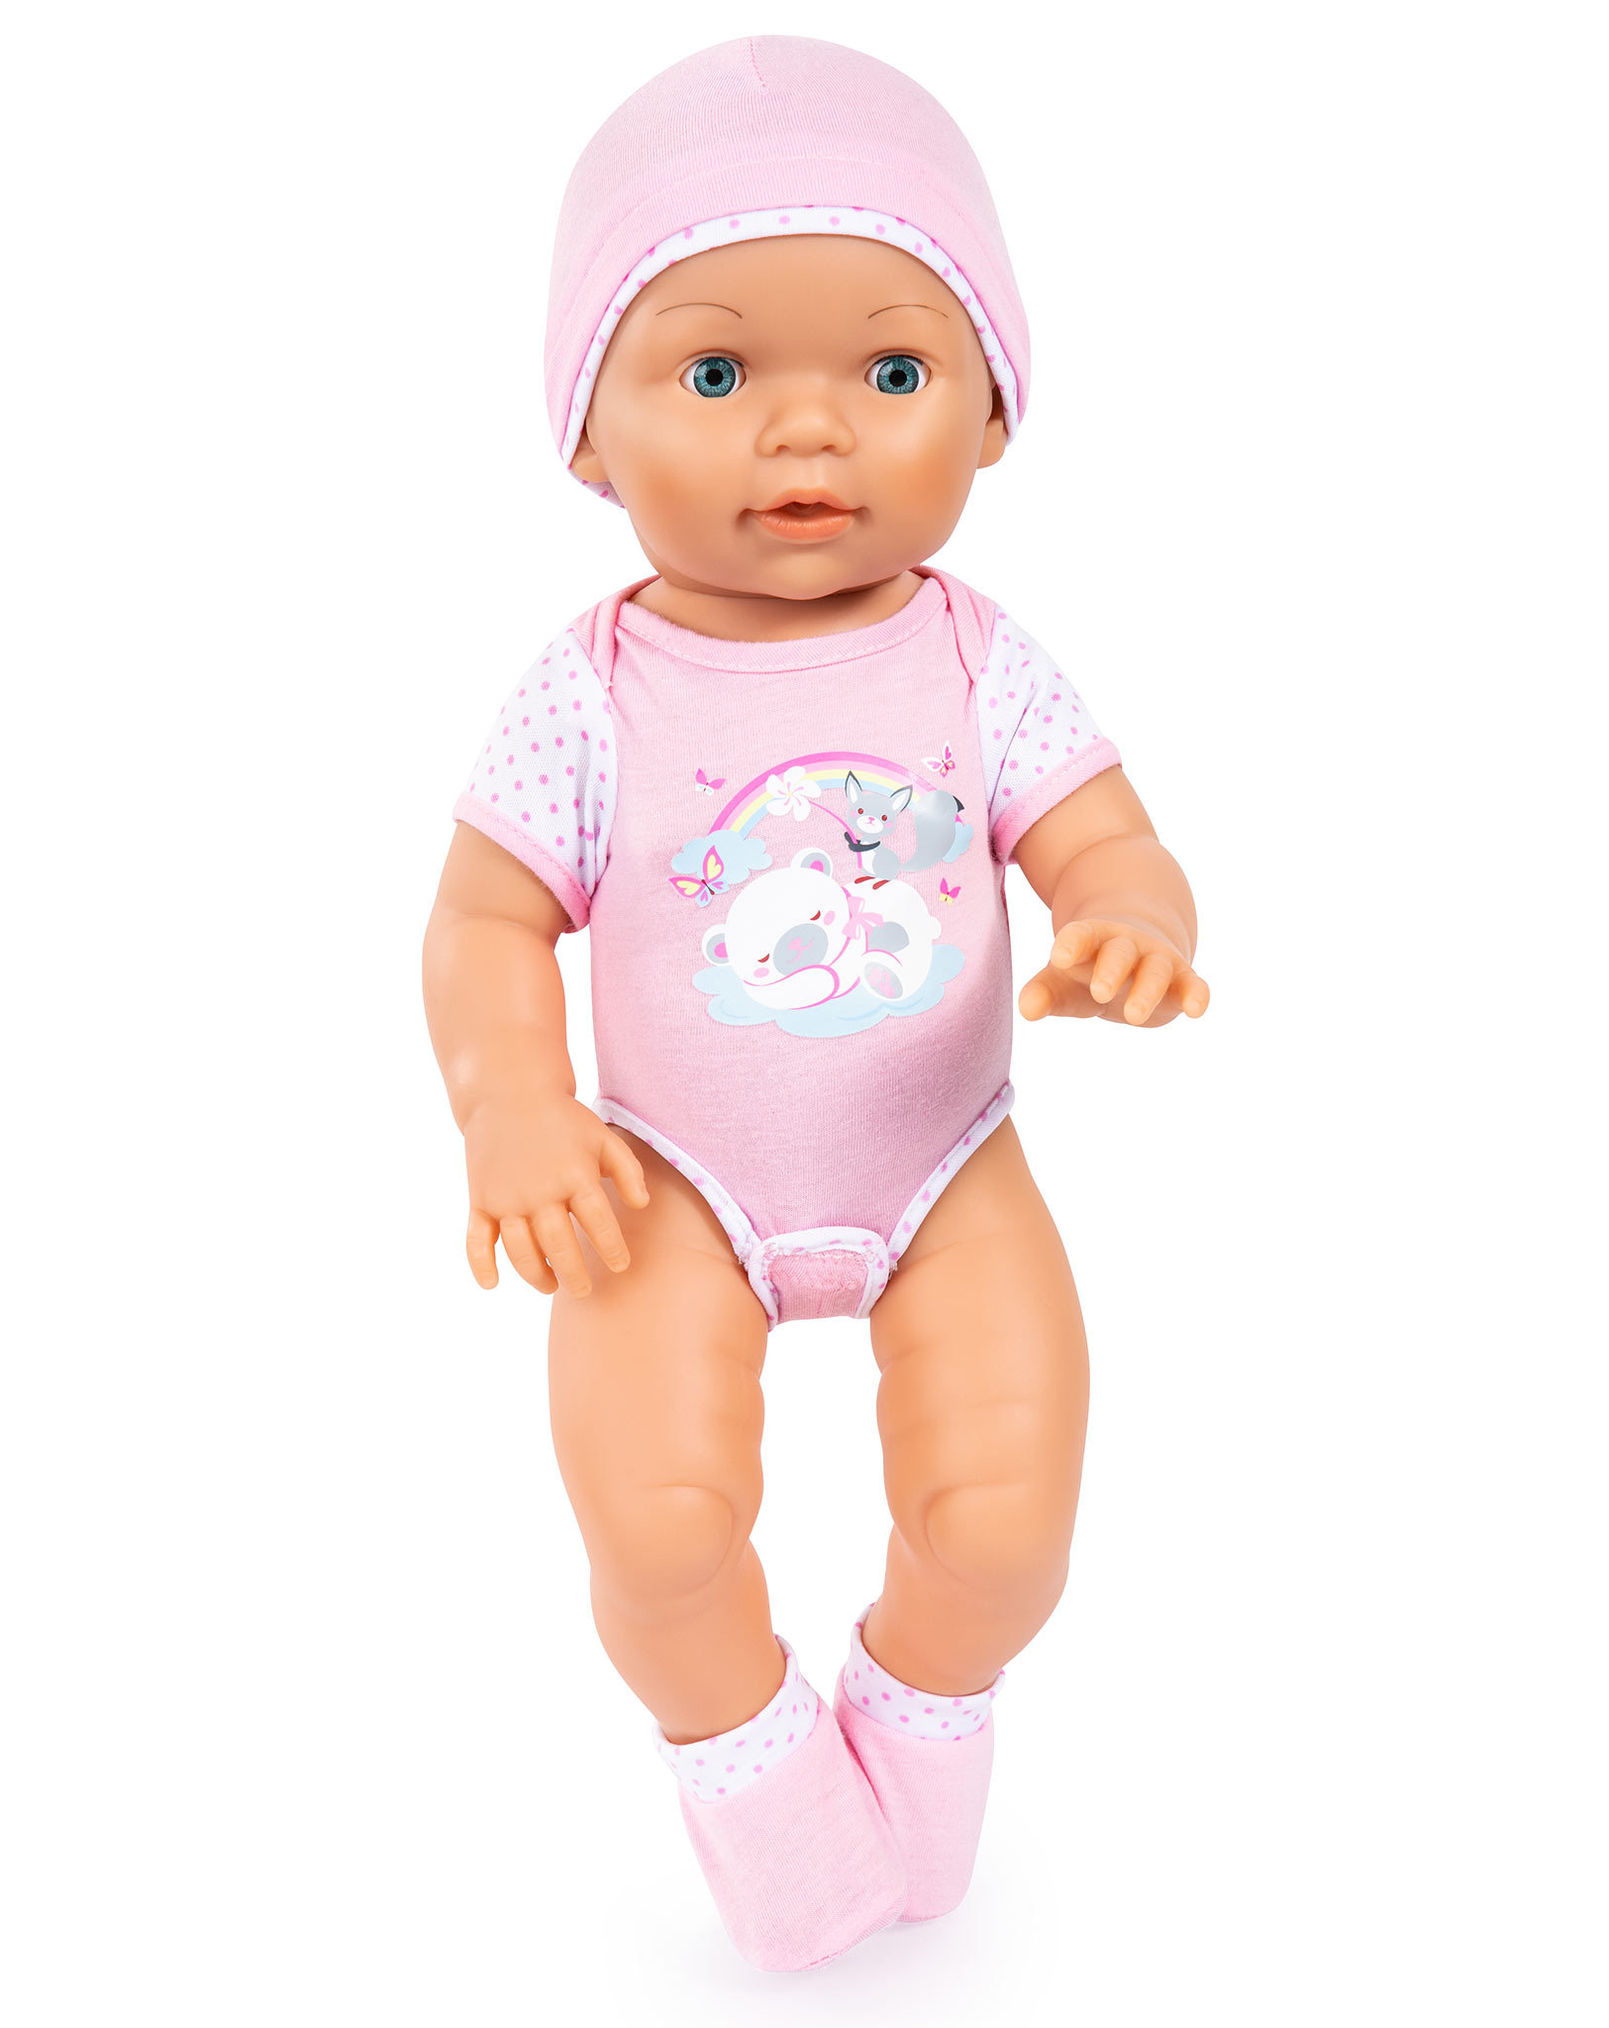 Baby-Puppe PICCOLINA LOVE 42cm mit Zubehör in rosa | Weltbild.de